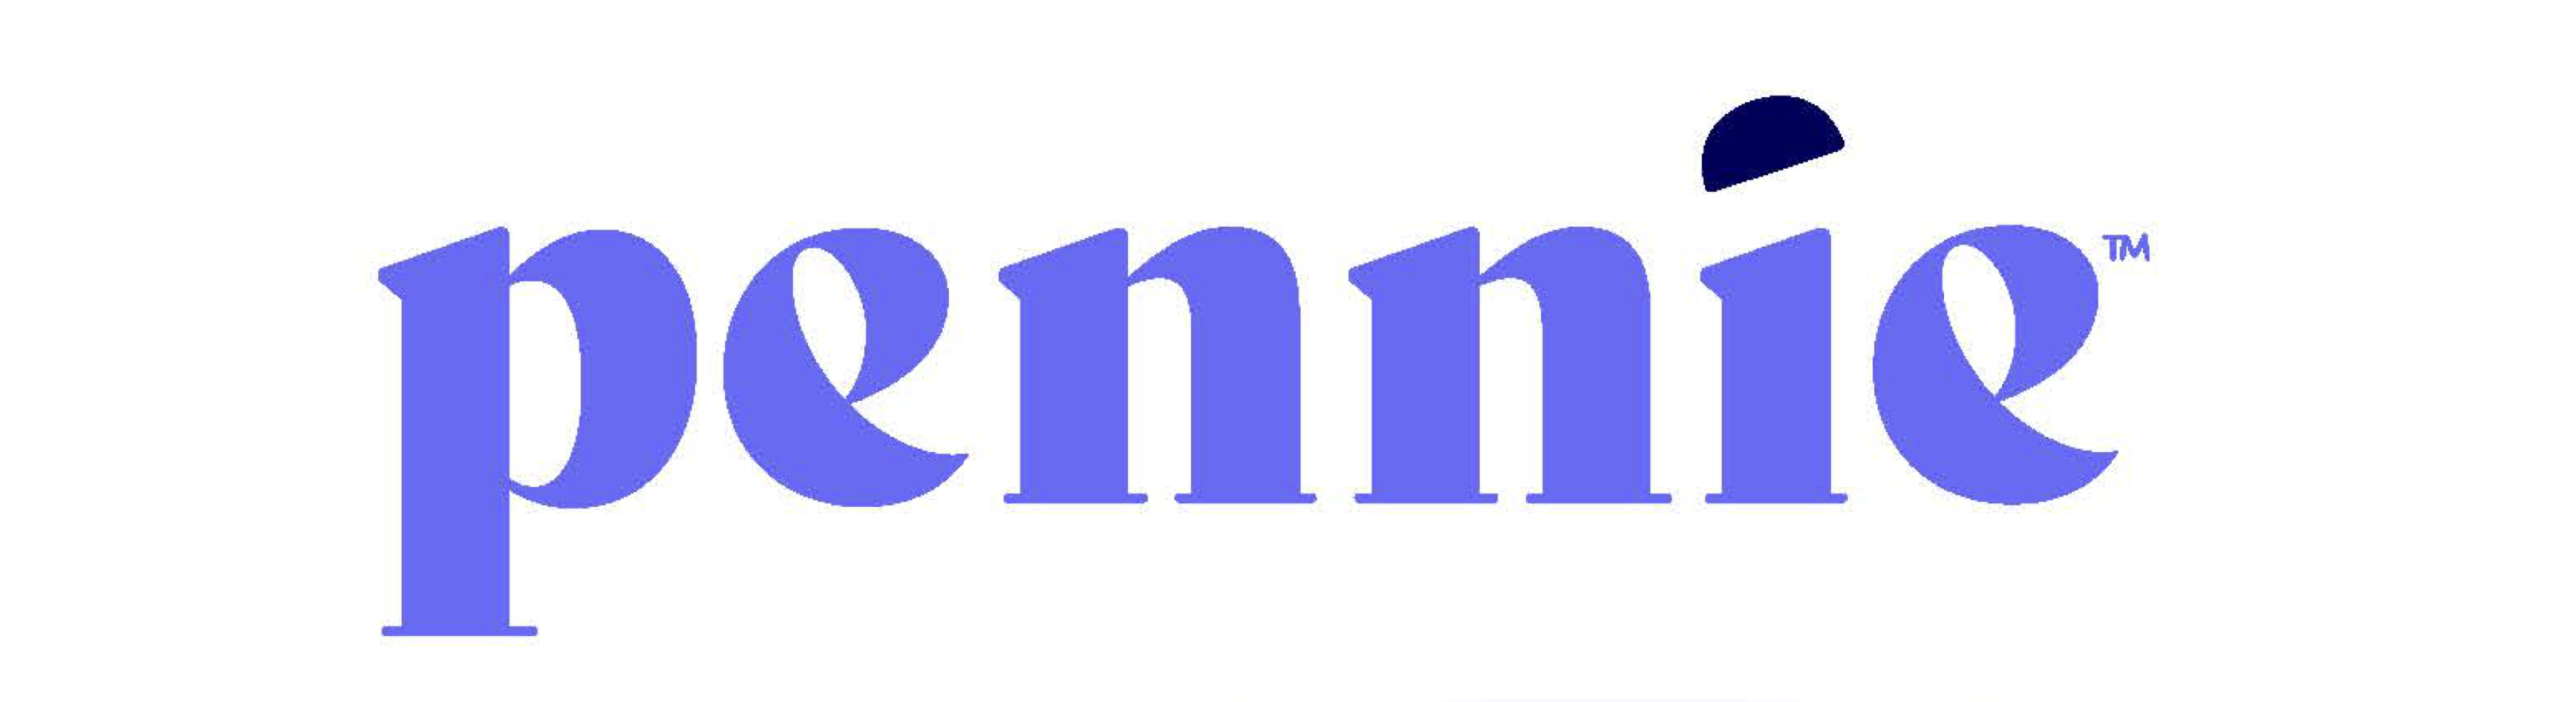 Pennie logo